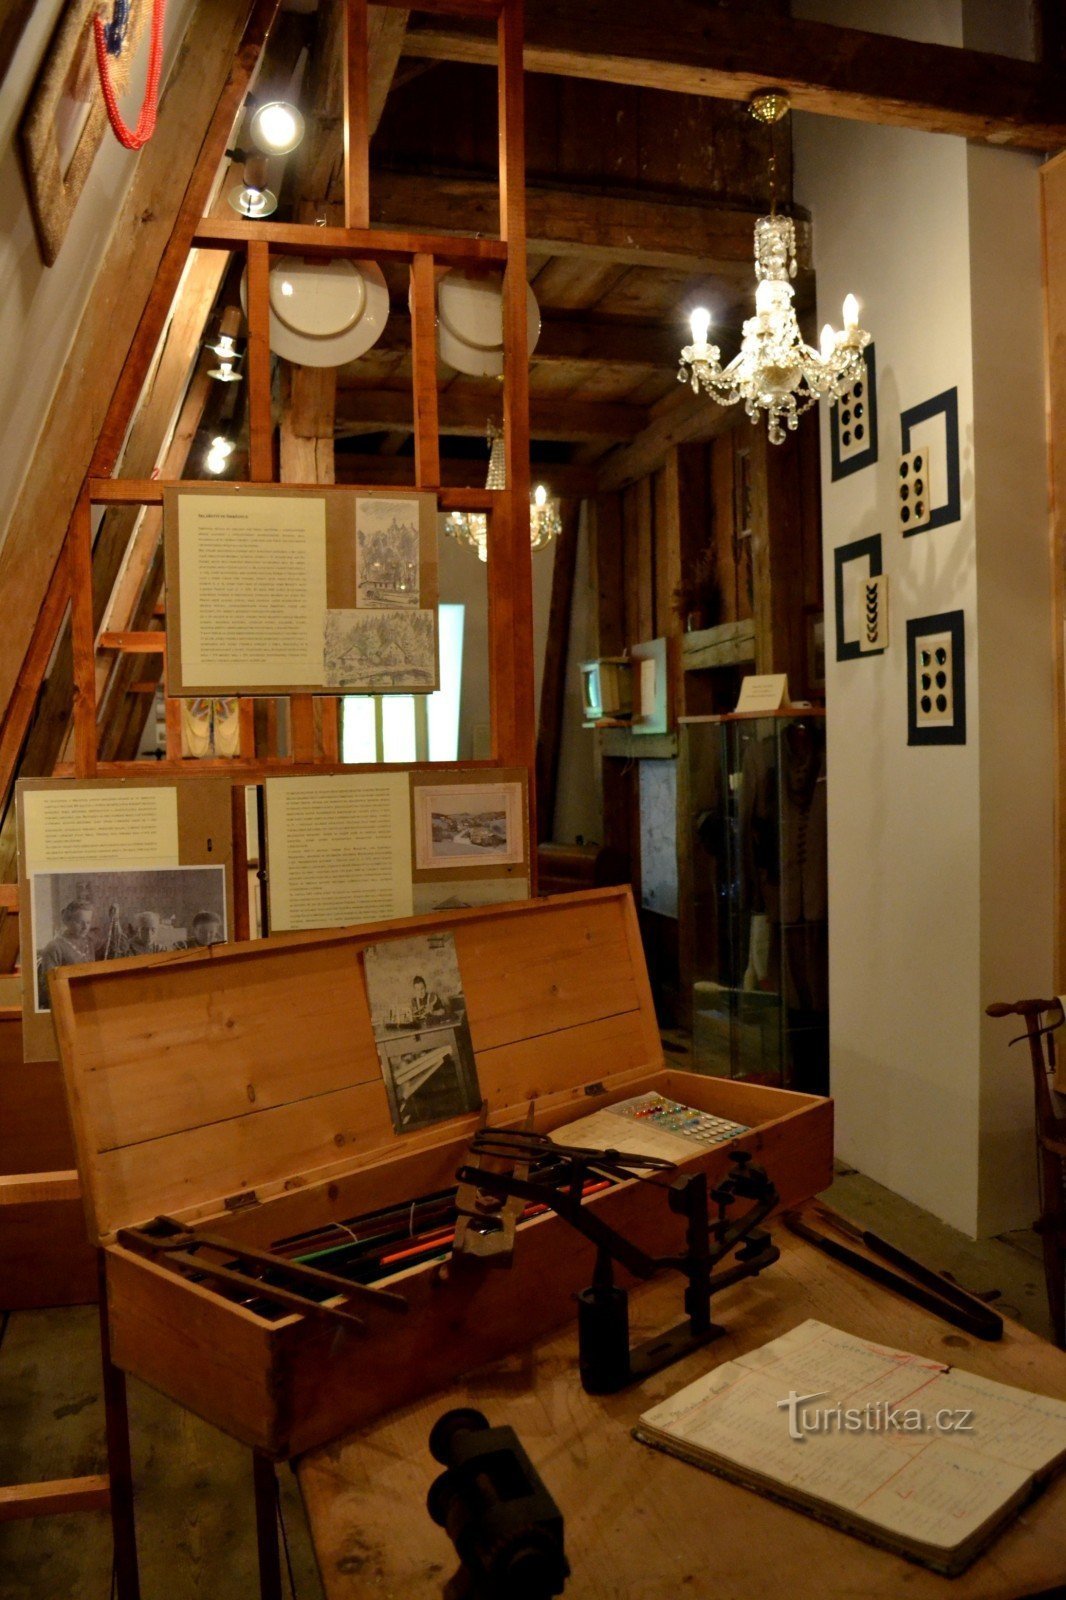 Μουσείο τοπικής ιστορίας και εκθεσιακός χώρος Smržovka